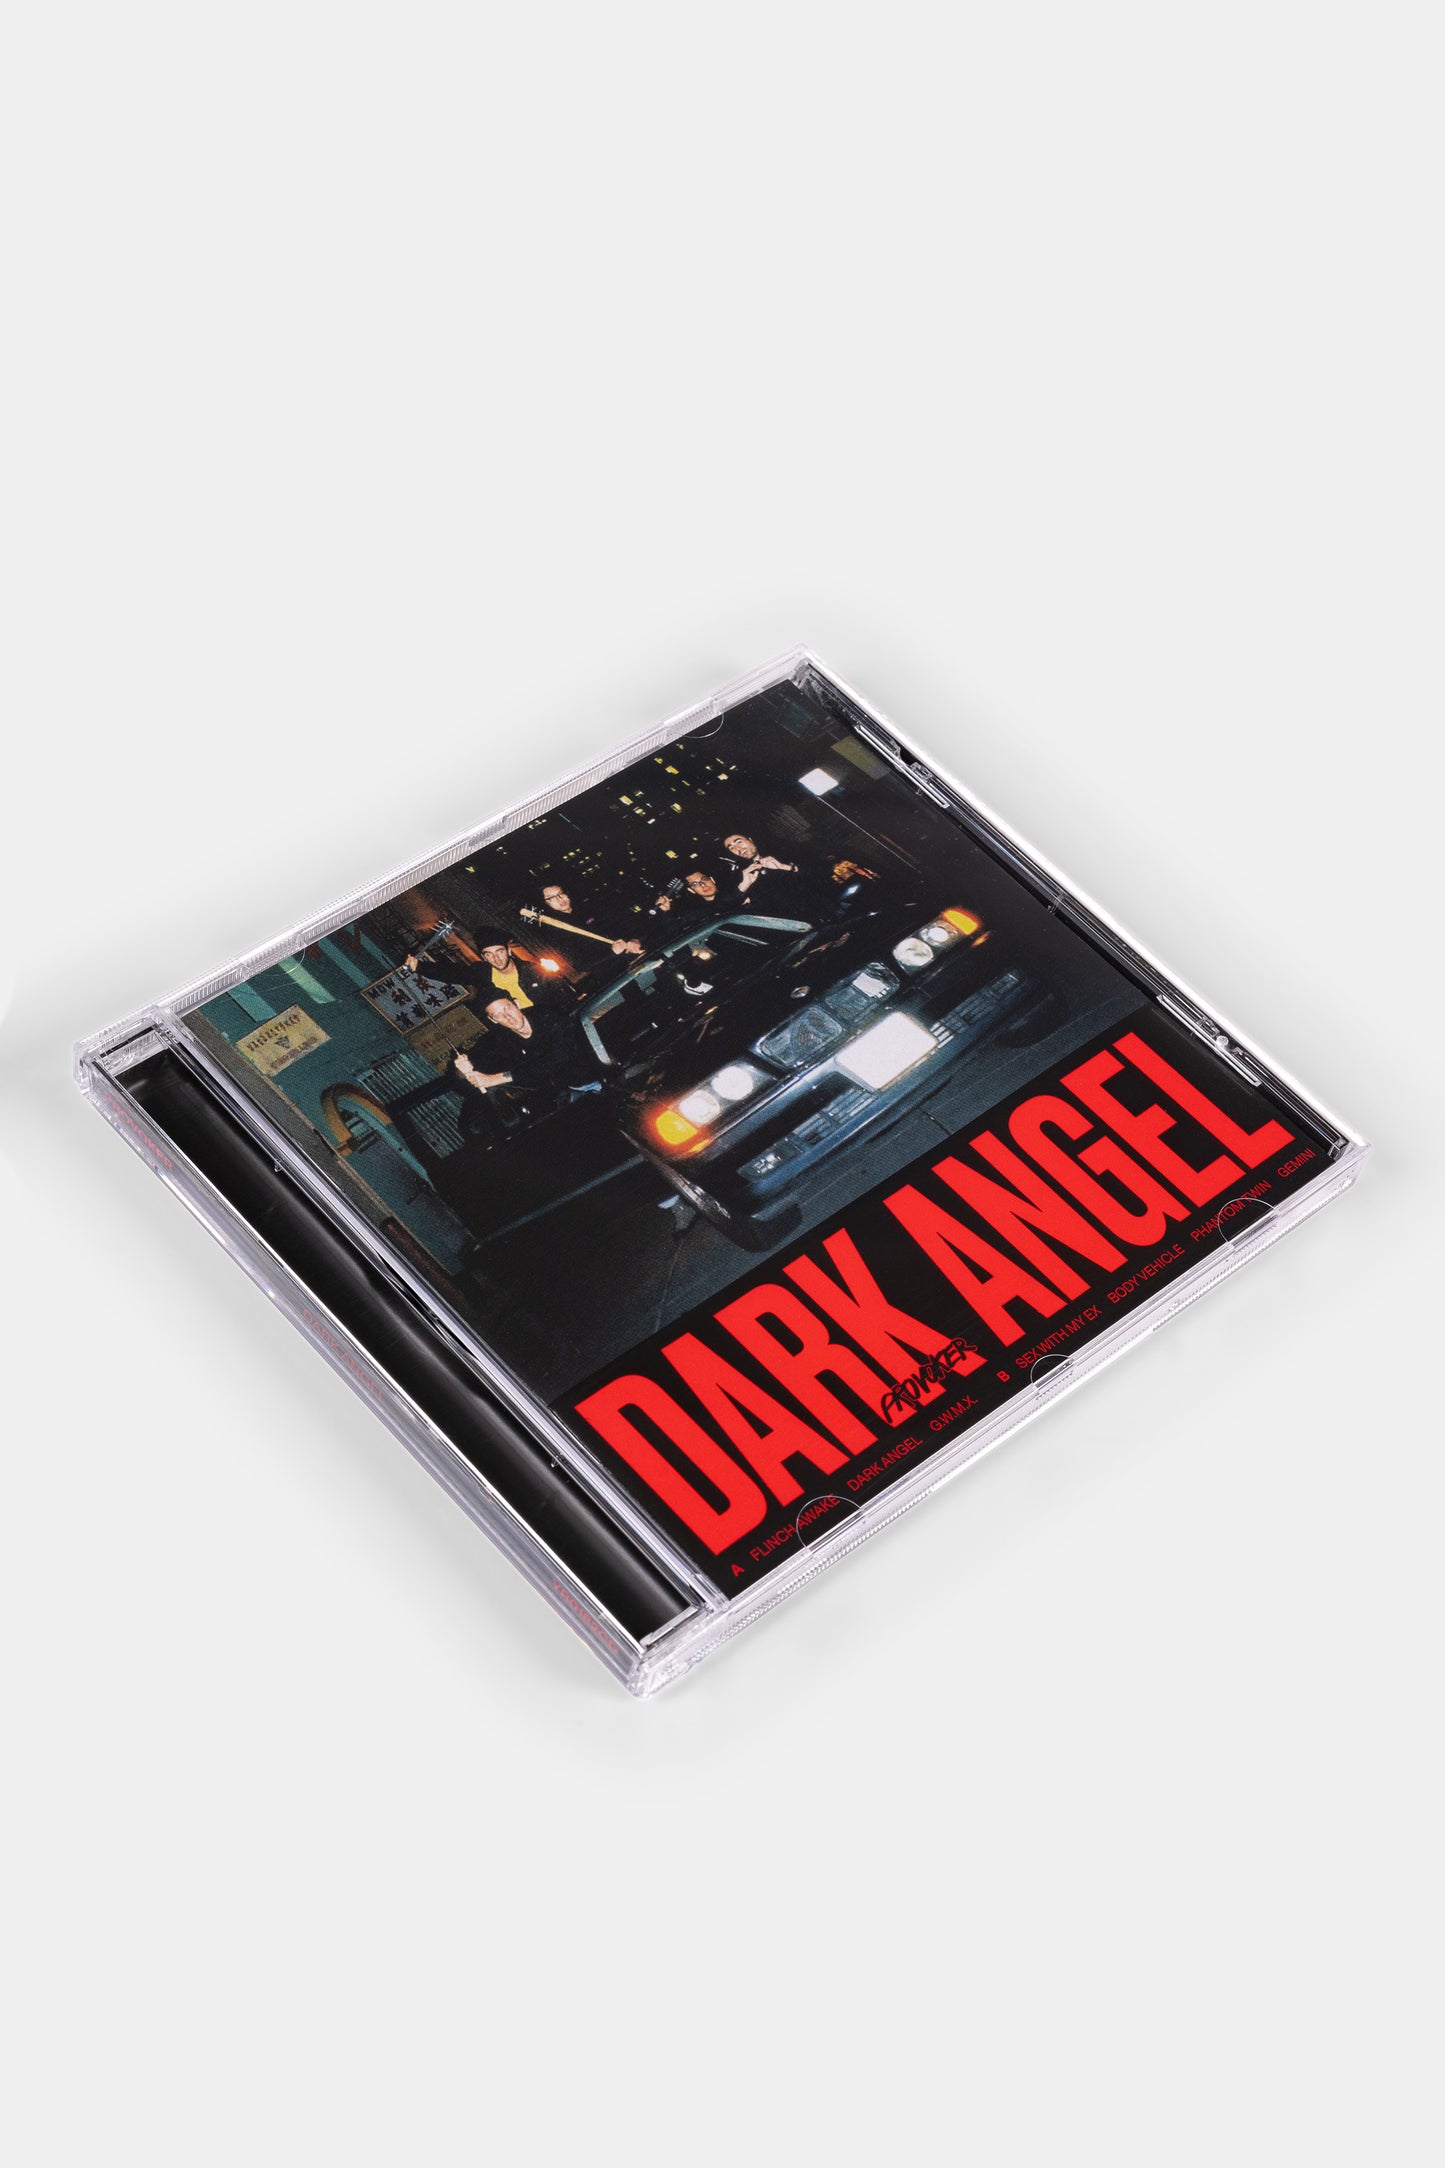 Dark Angel CD (1st issue)